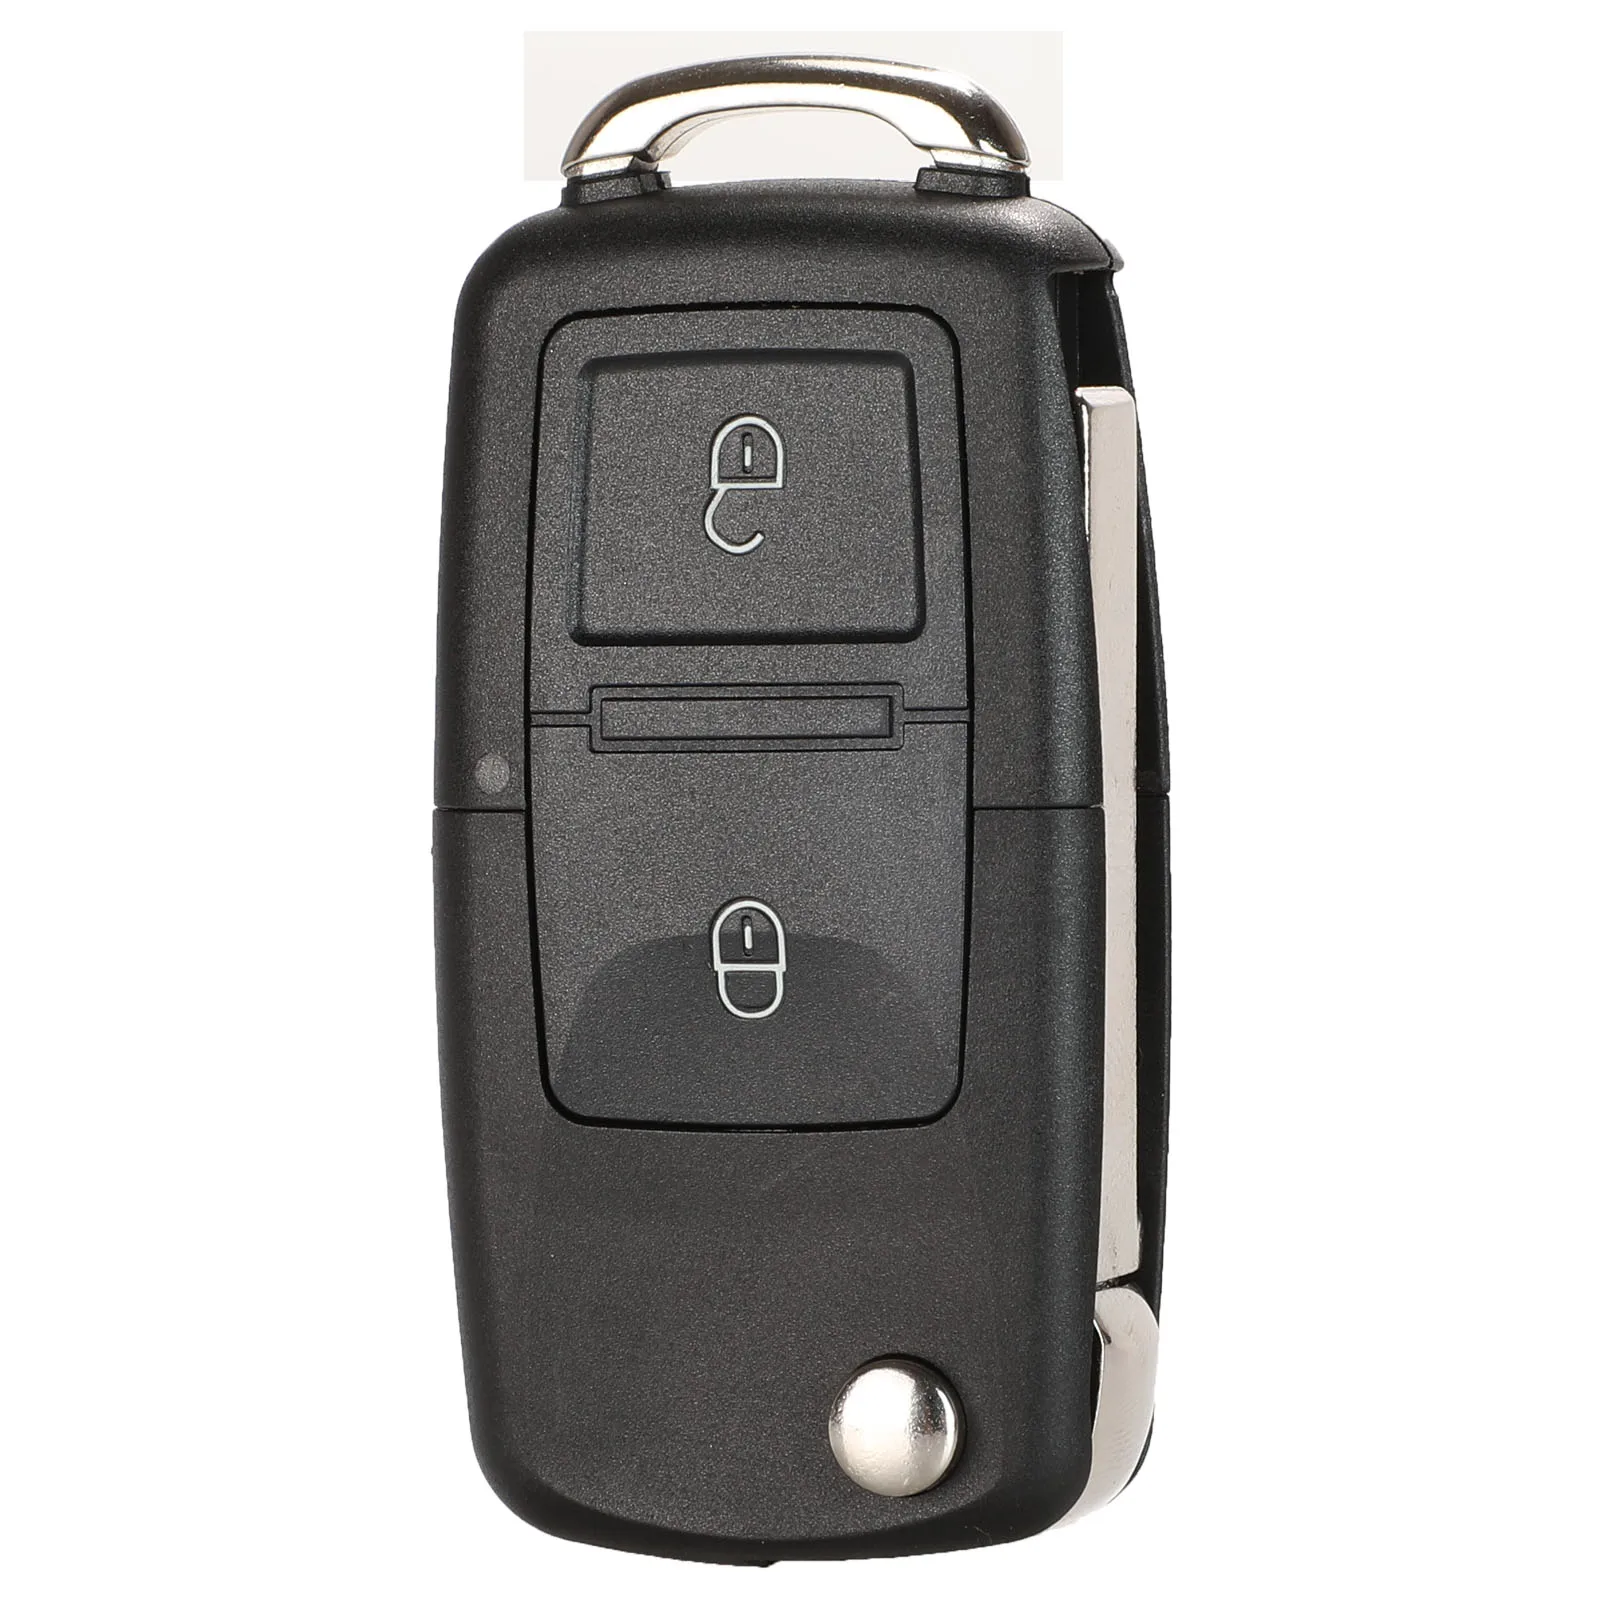 Jingyuqin пульт дистанционного флипа ключа автомобиля в виде ракушки для Volkswagen VW Jetta Passat Polo B5 B6 Golf 7 Touran Bora Beetle Skoda сиденья 2/3/4 кнопки